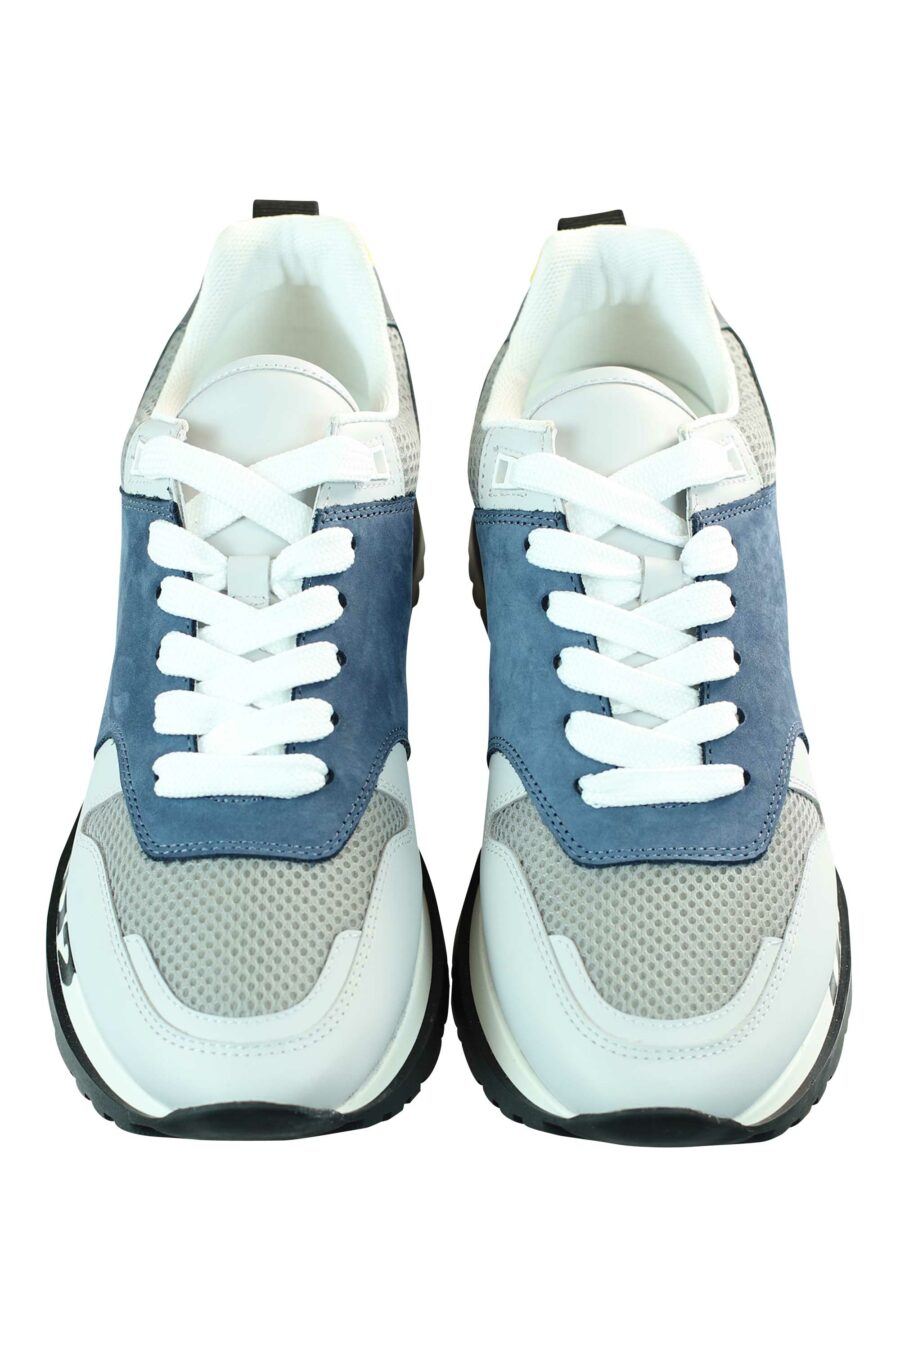 Chaussures de course multicolores bleues avec logo sur la semelle - 8055777205549 5